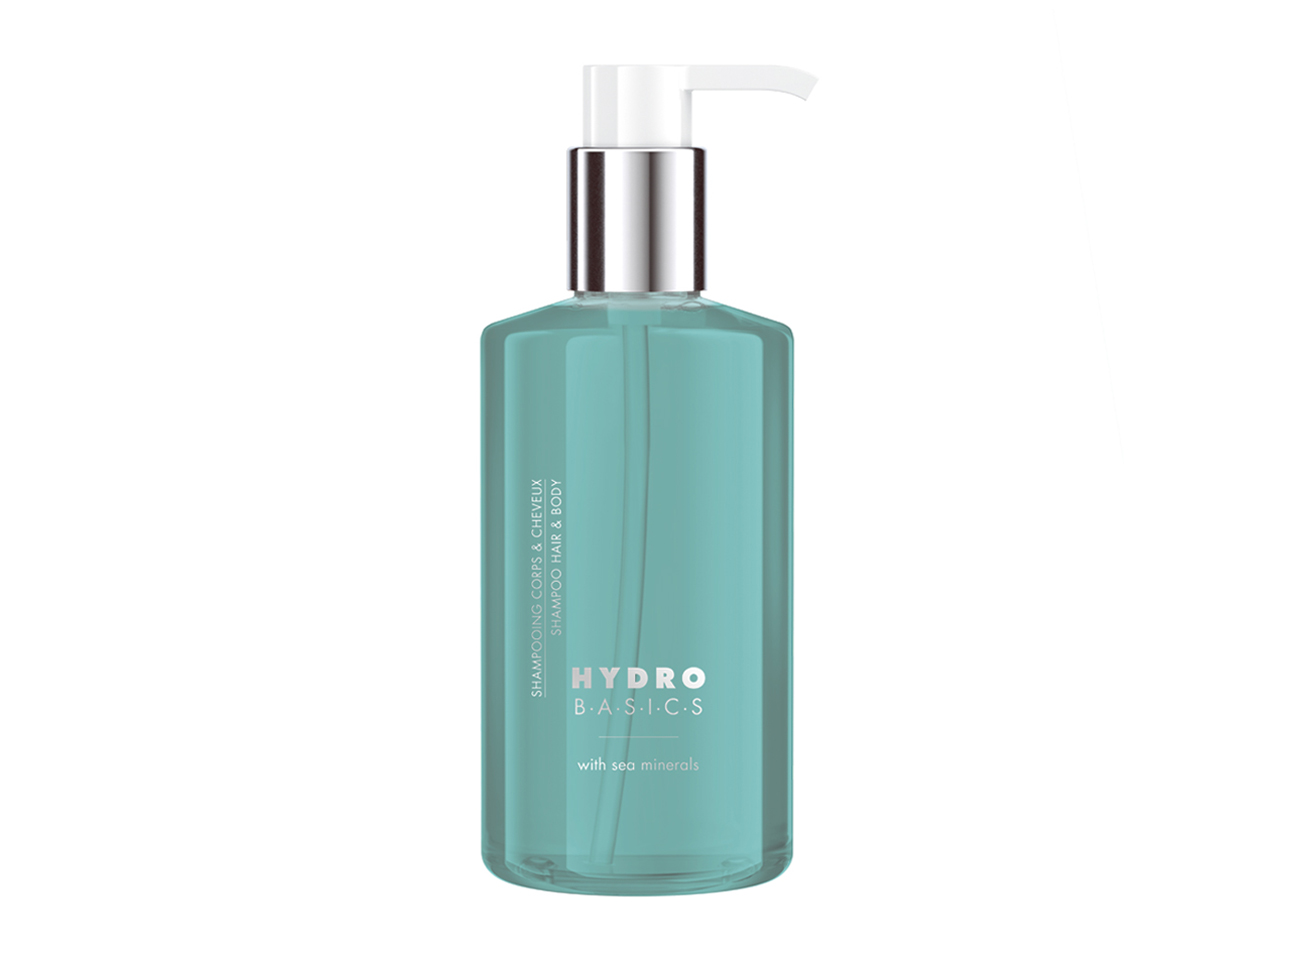 Hydro Basics Haar & Körper Shampoo - Pumpspender, 300 ml